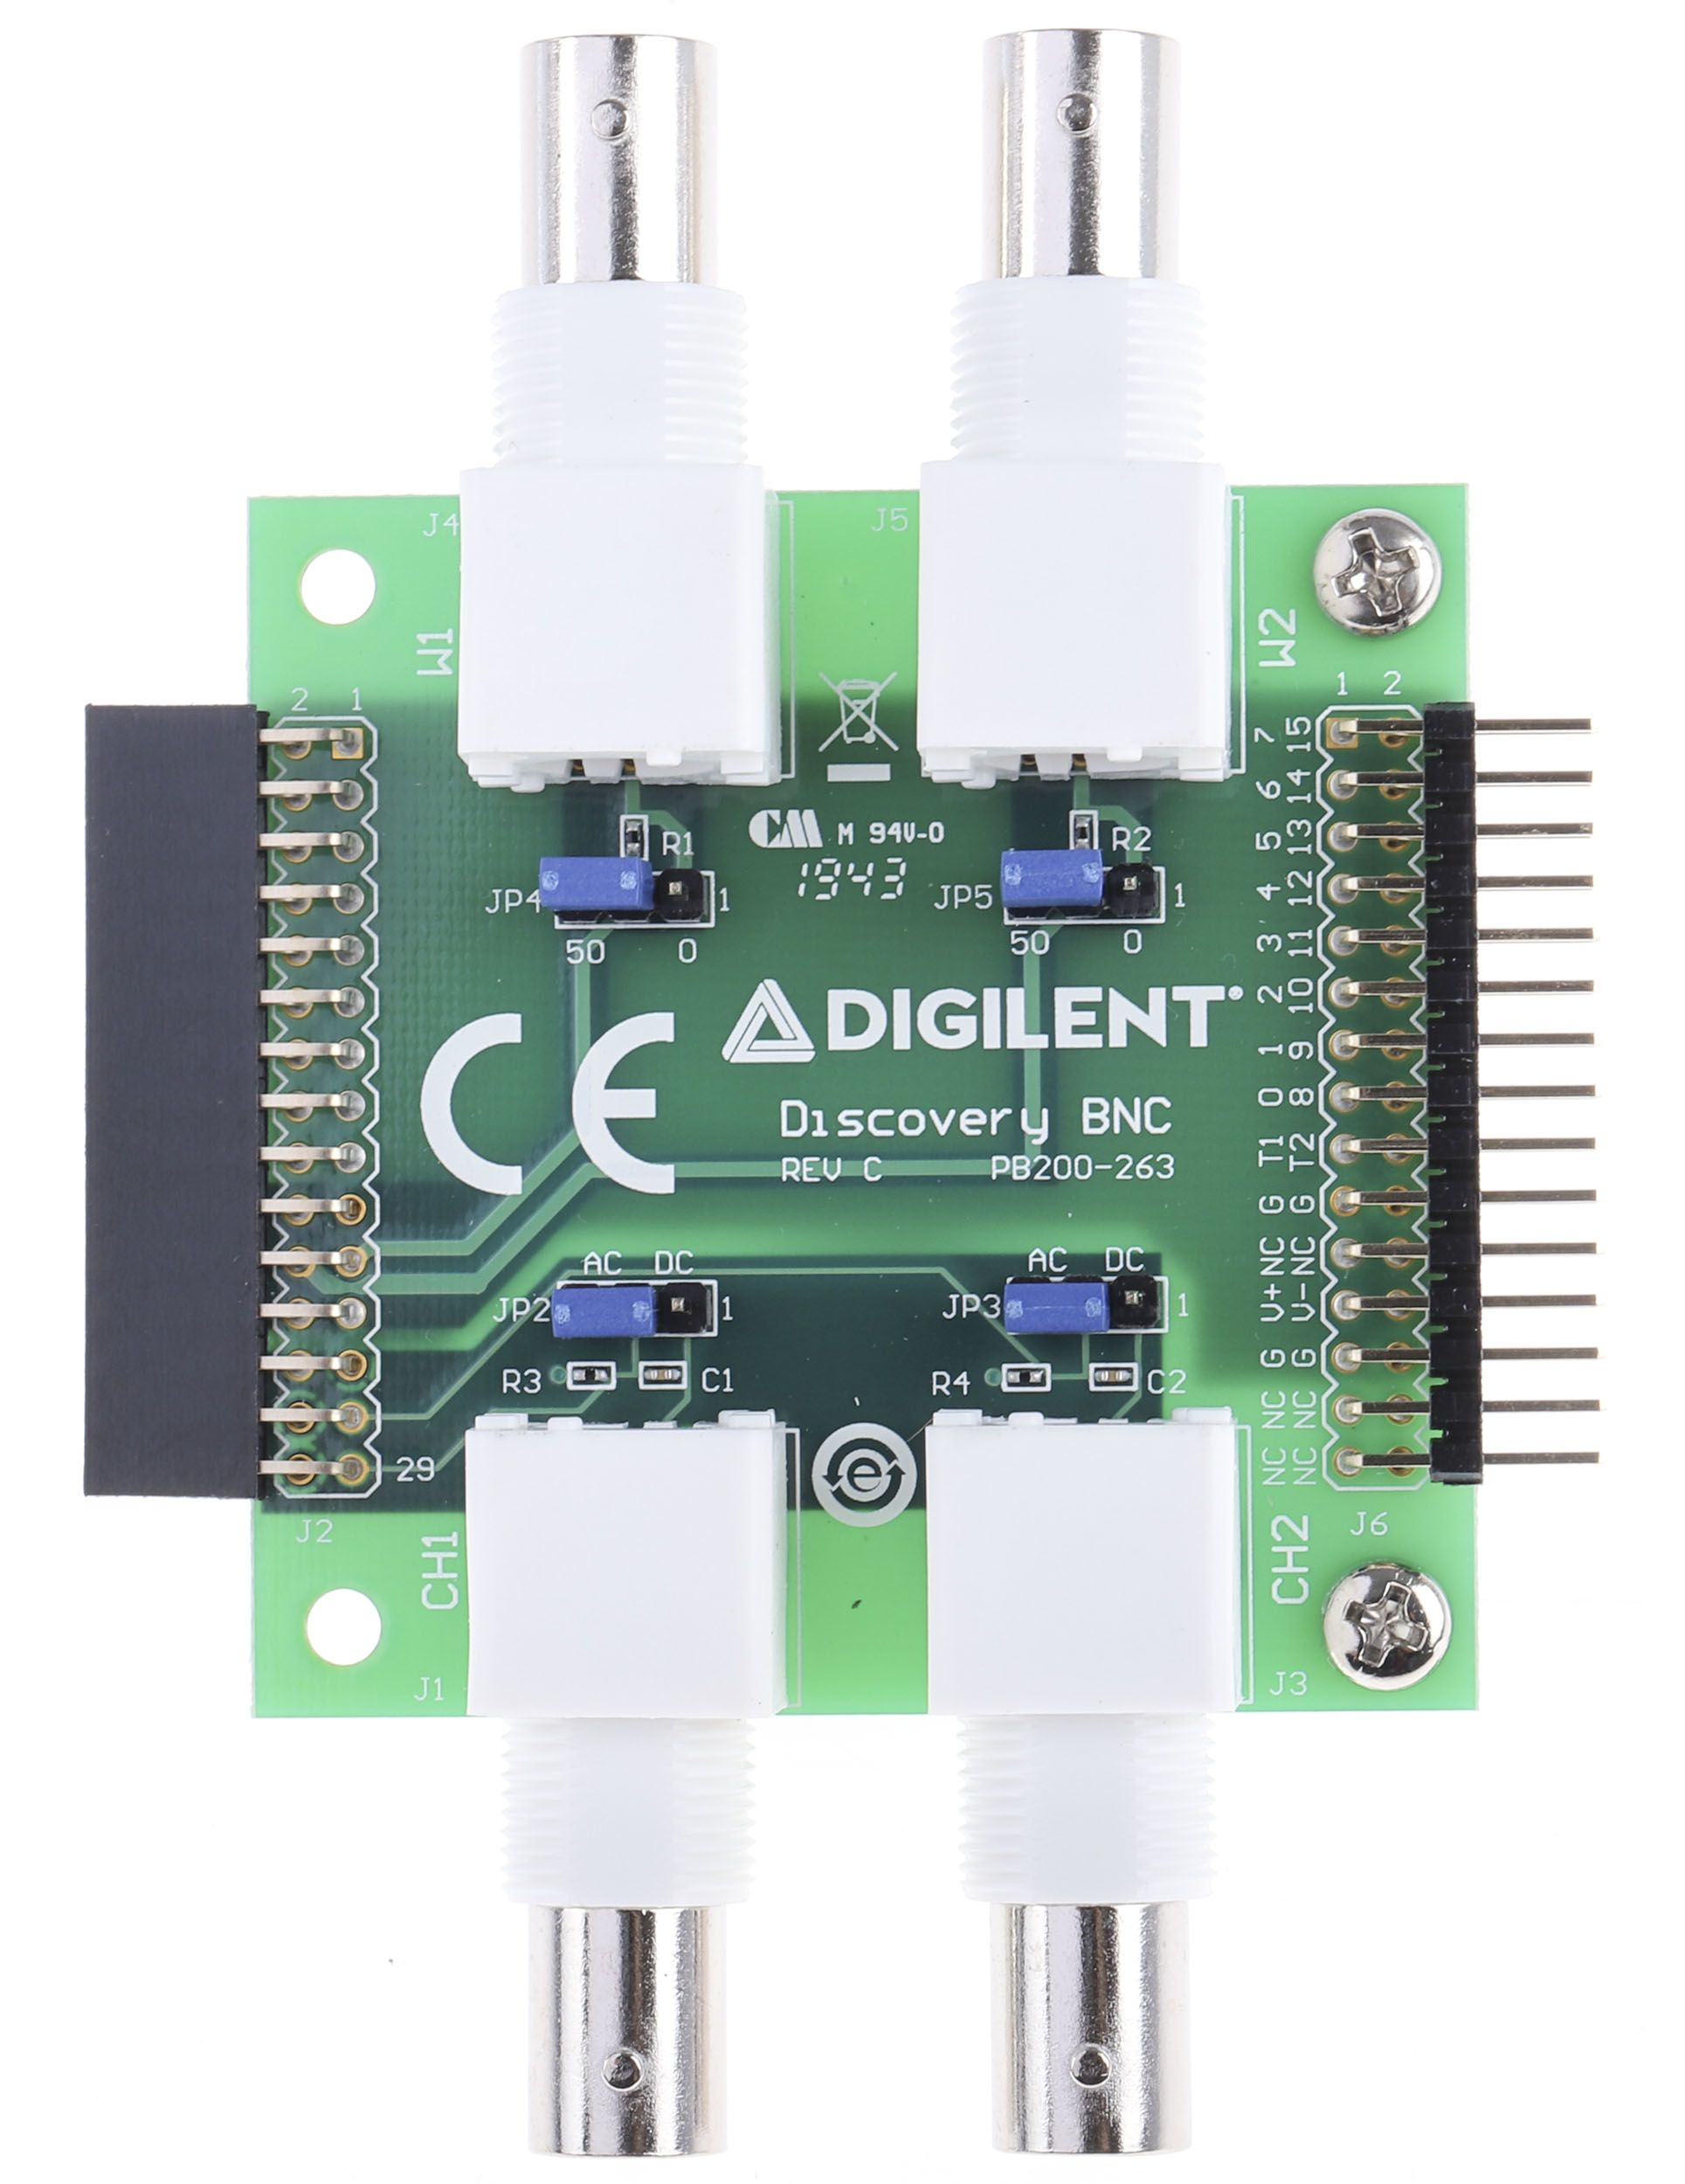 Digilent 410-263 BNC-Leiterplattenadapter, für Analog Discovery 2